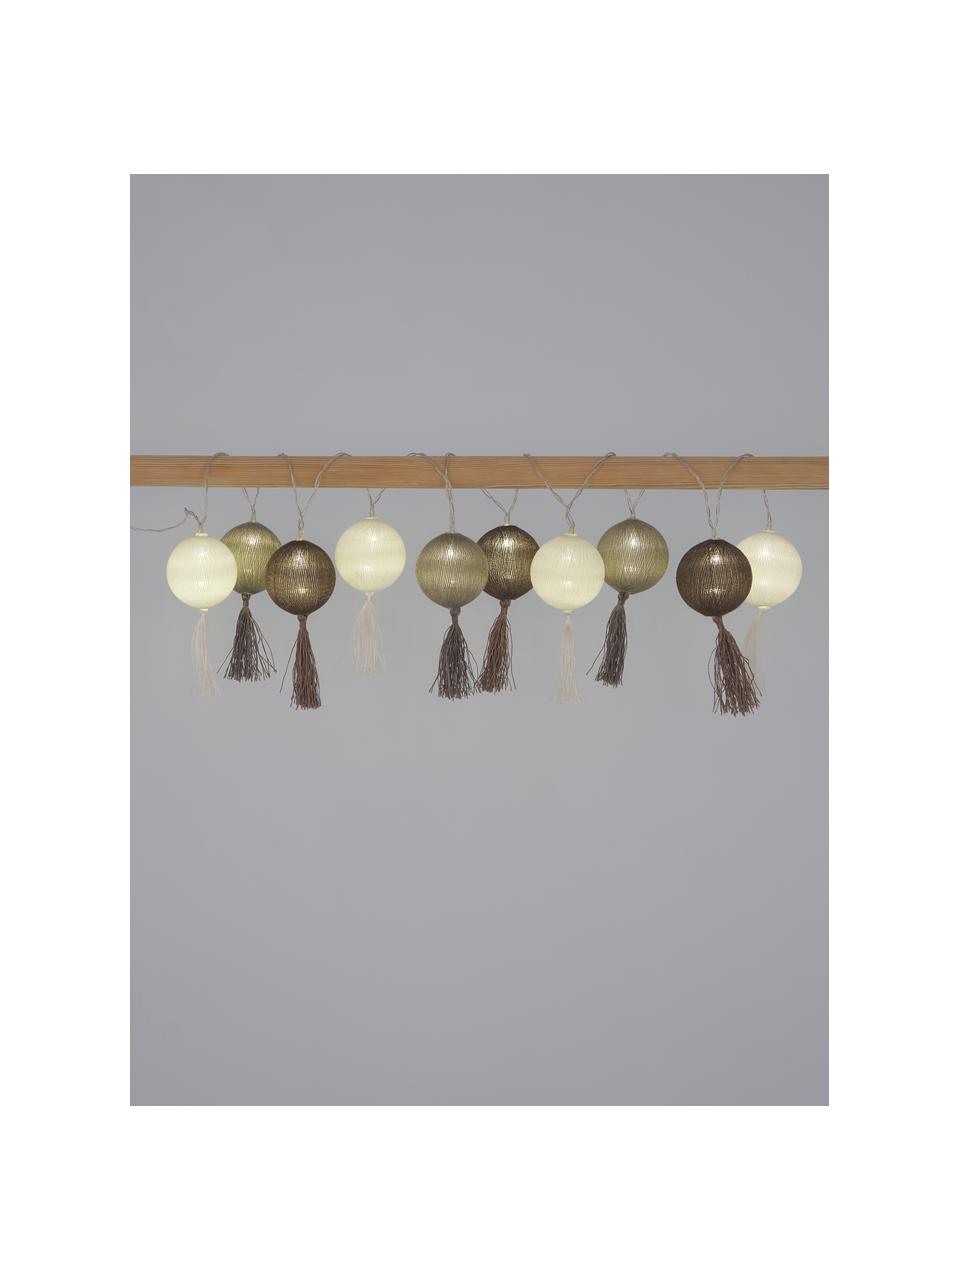 Světelný LED řetěz Jolly Tassel, 185 cm, 10 lampionů, Bílá, hnědá, béžová, D 185 cm